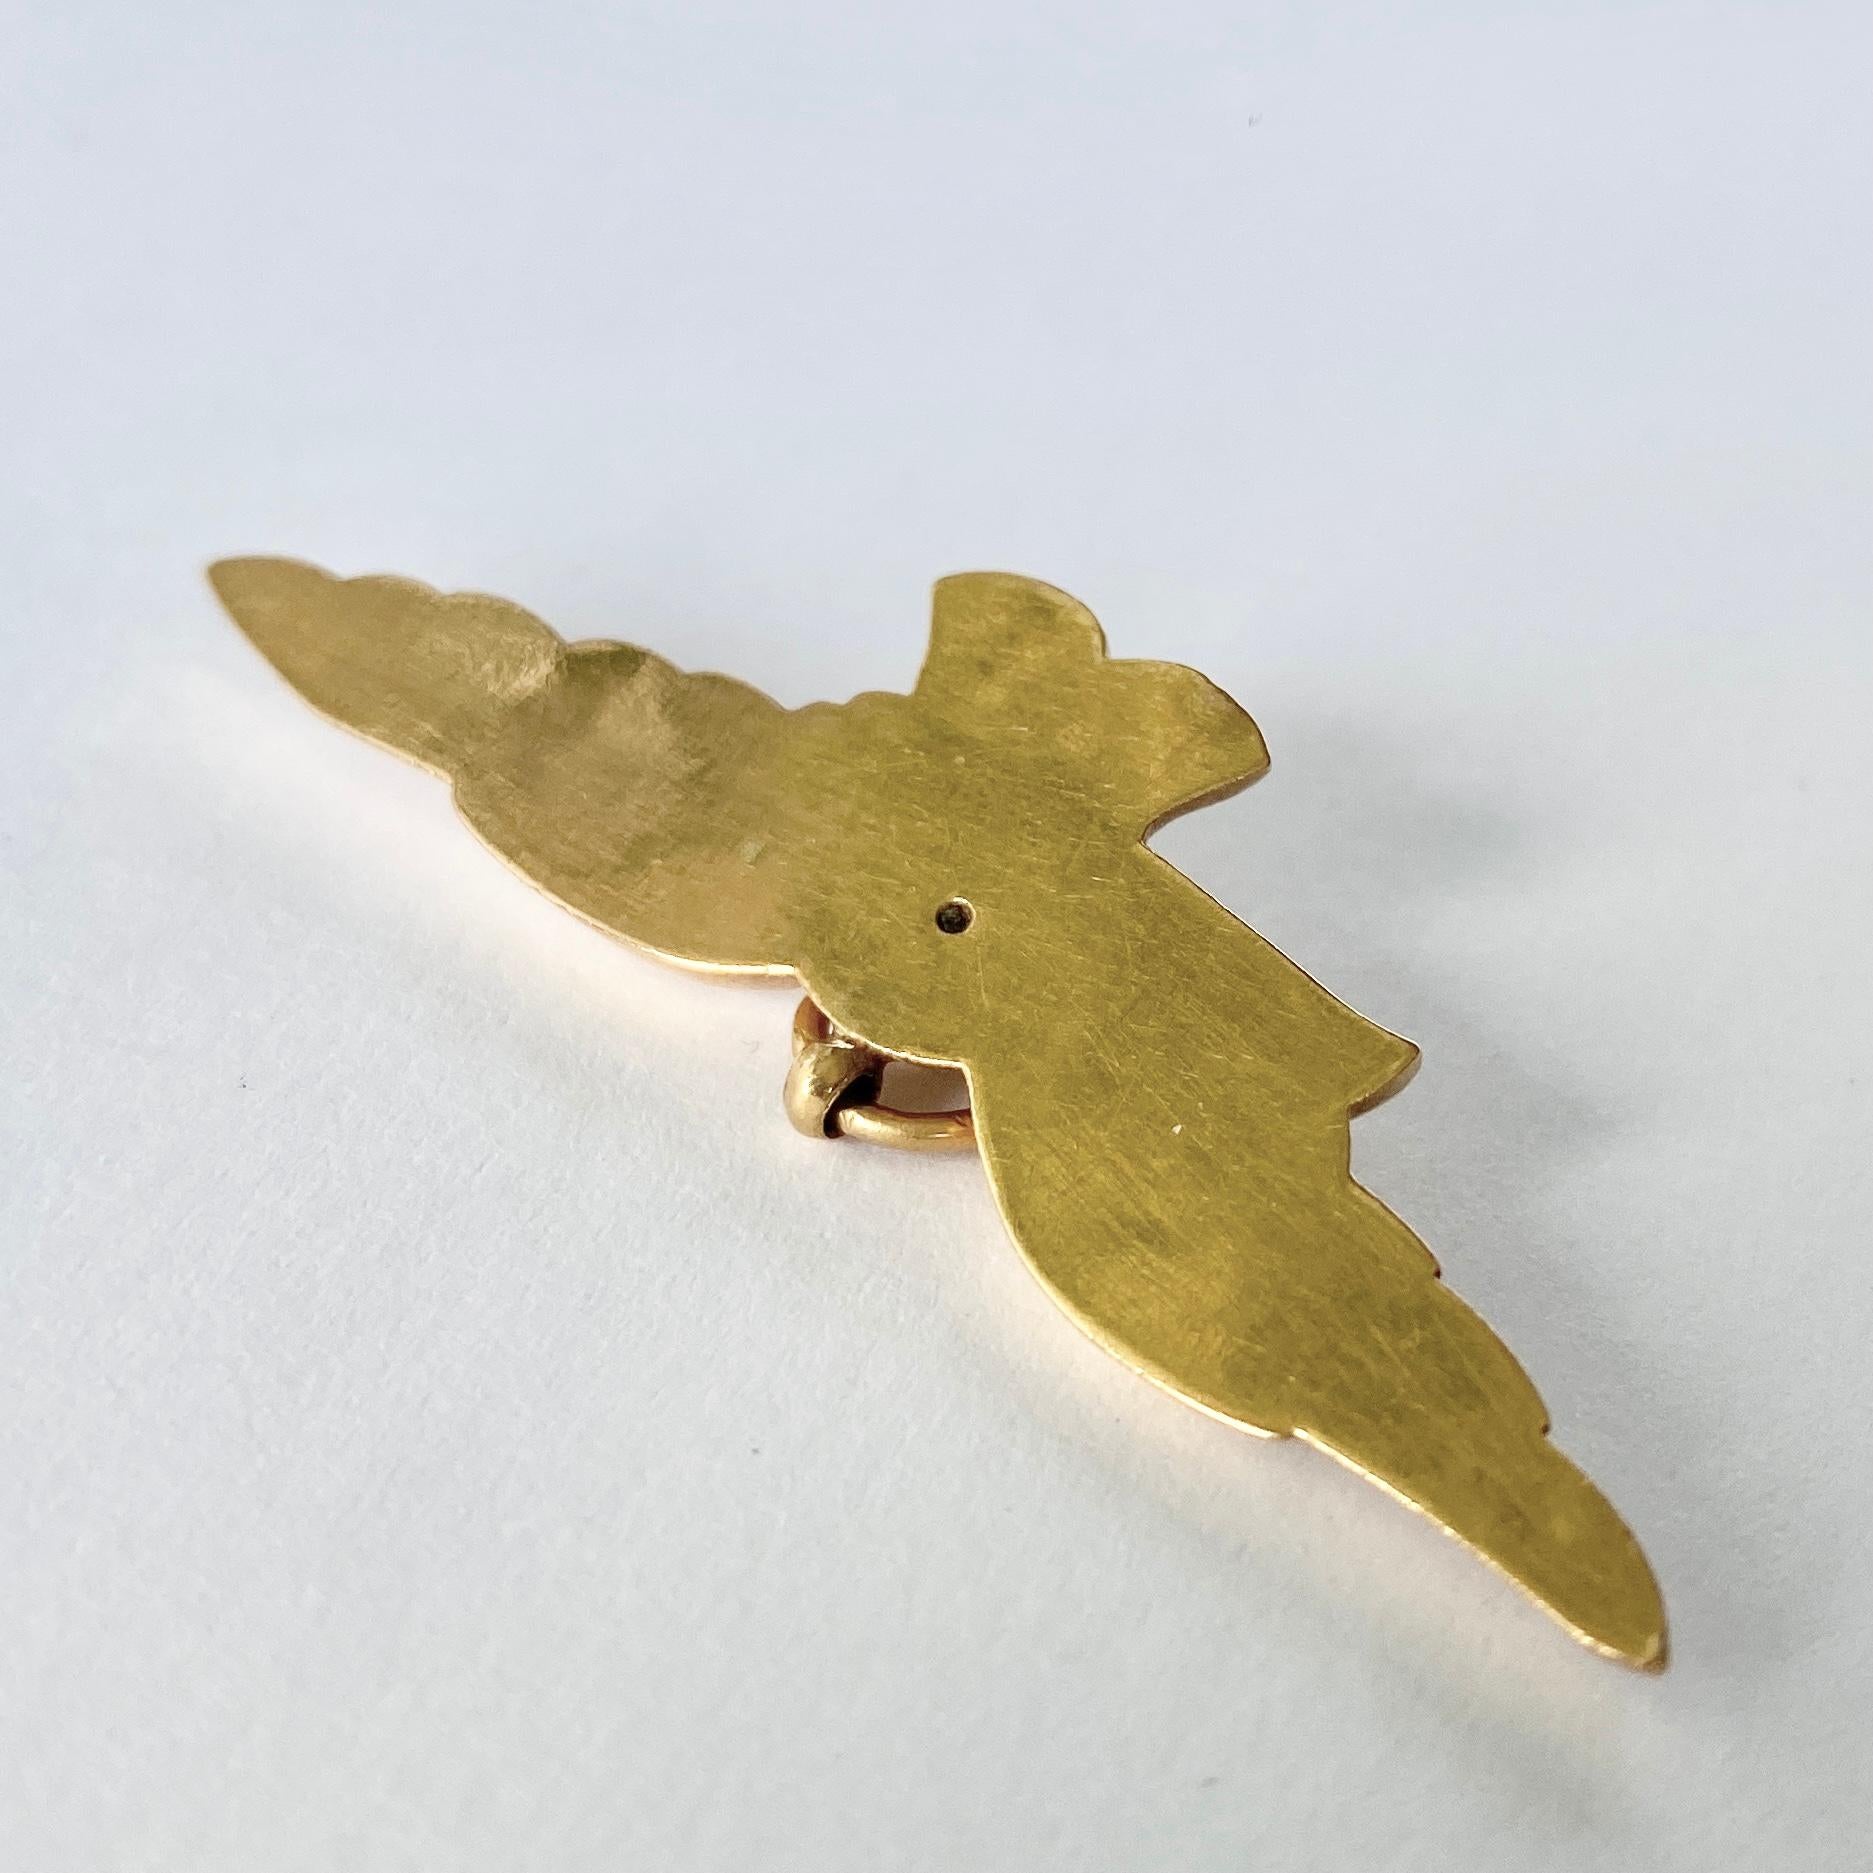 Ce magnifique pendentif en forme d'aigle est réalisé en or 18 carats. Les épingles sont portées pour représenter la force, la paix et l'honnêteté. 

Envergure des ailes : 51mm

Poids : 4,1 g